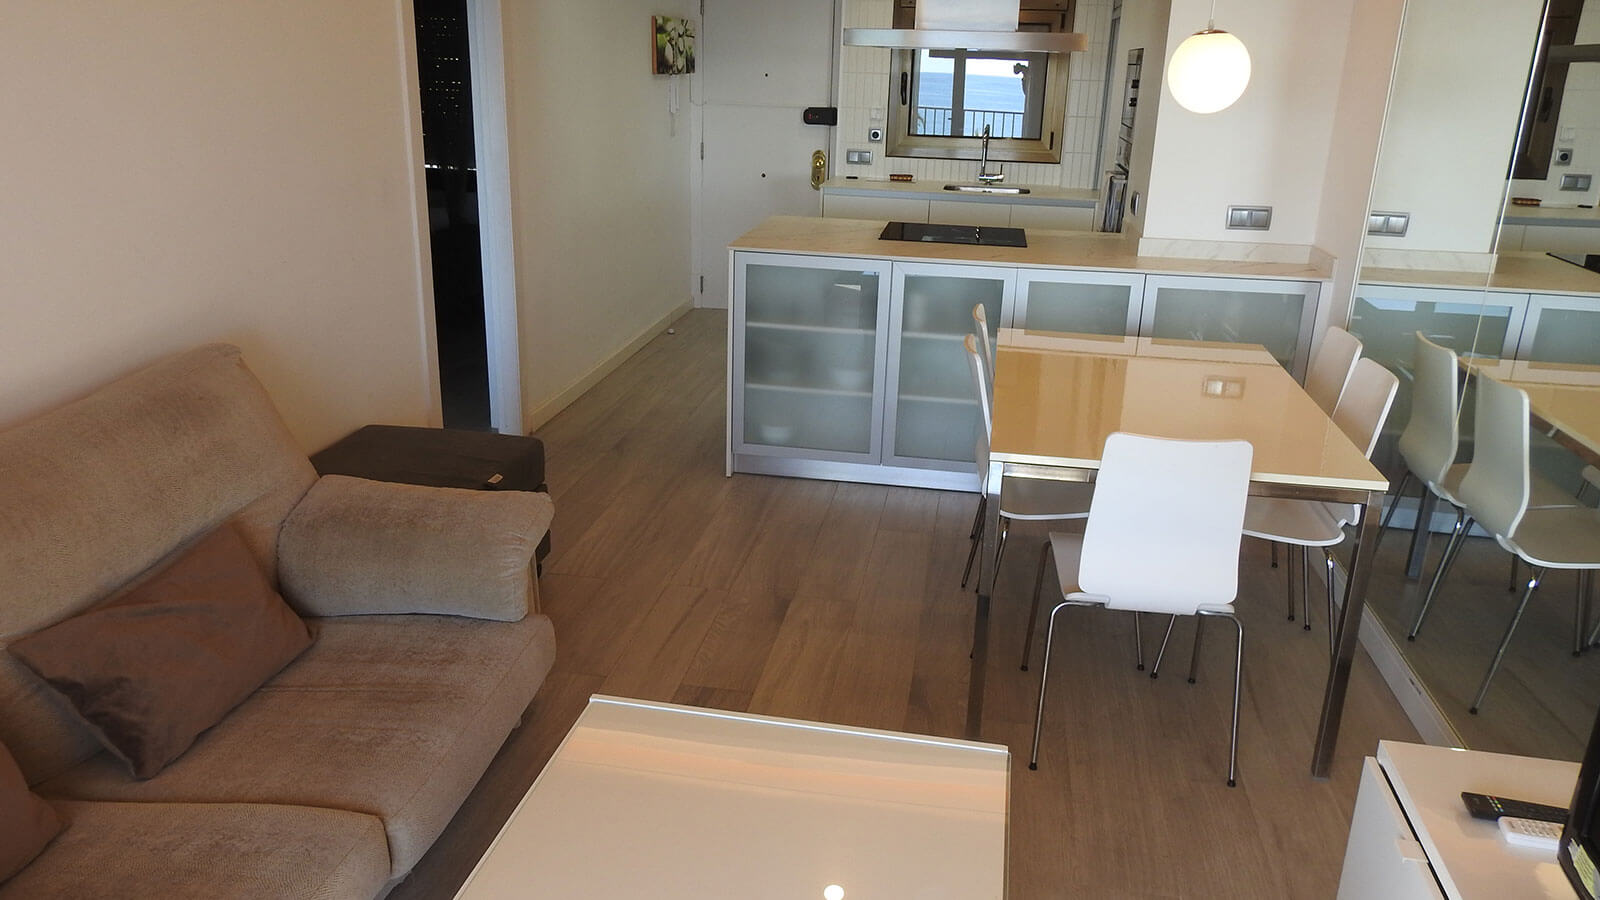 salon-comedor-y-cocina-2b-apartamento-play-2-habitaciones-moderno-vista-mar-primera-linea-torre-valentina